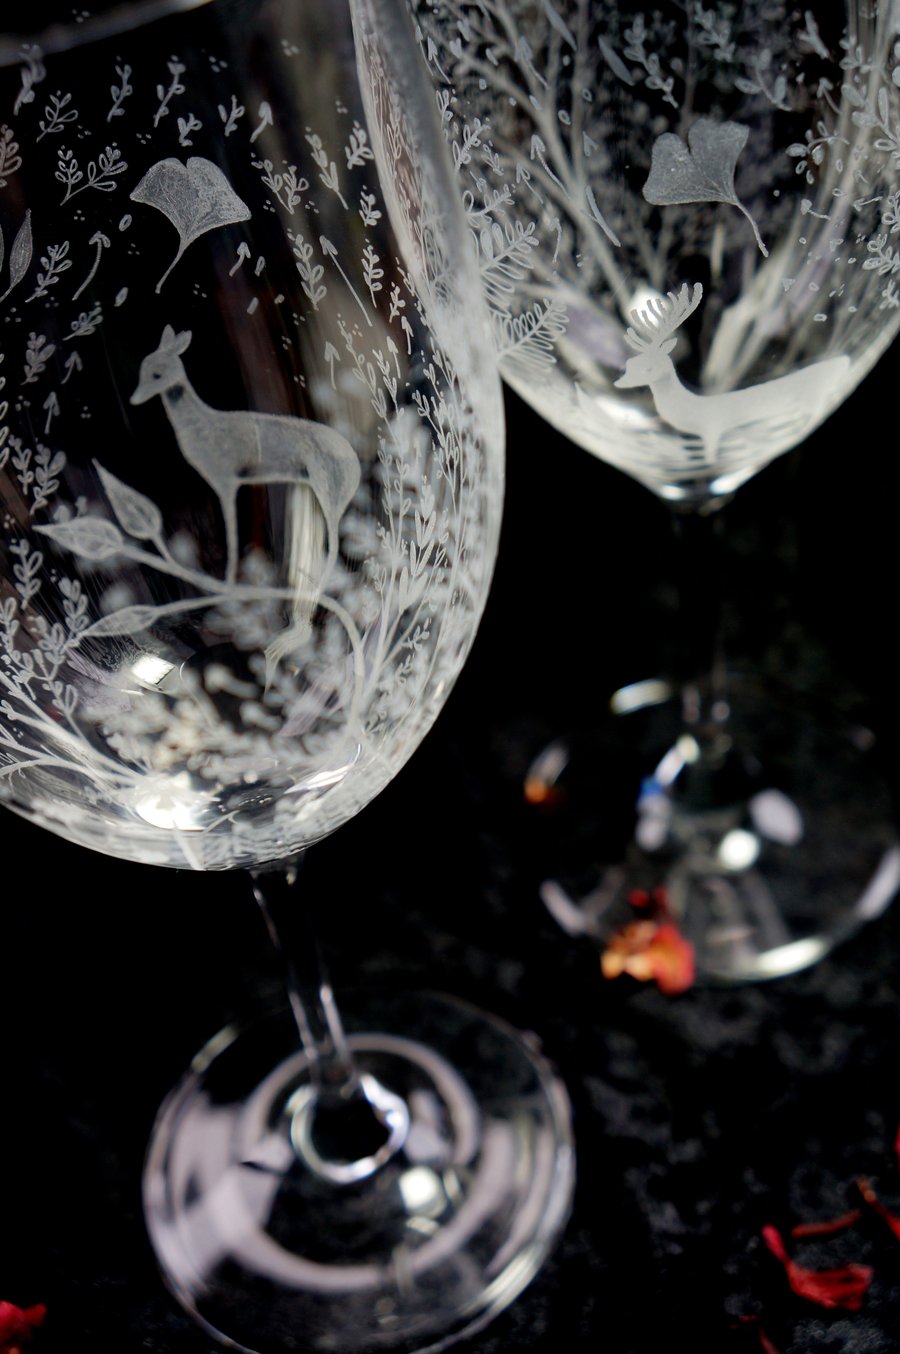 Pair of Hand Engraved Bohemia Crystal Wine Glasses, Deer & Floral Engravings